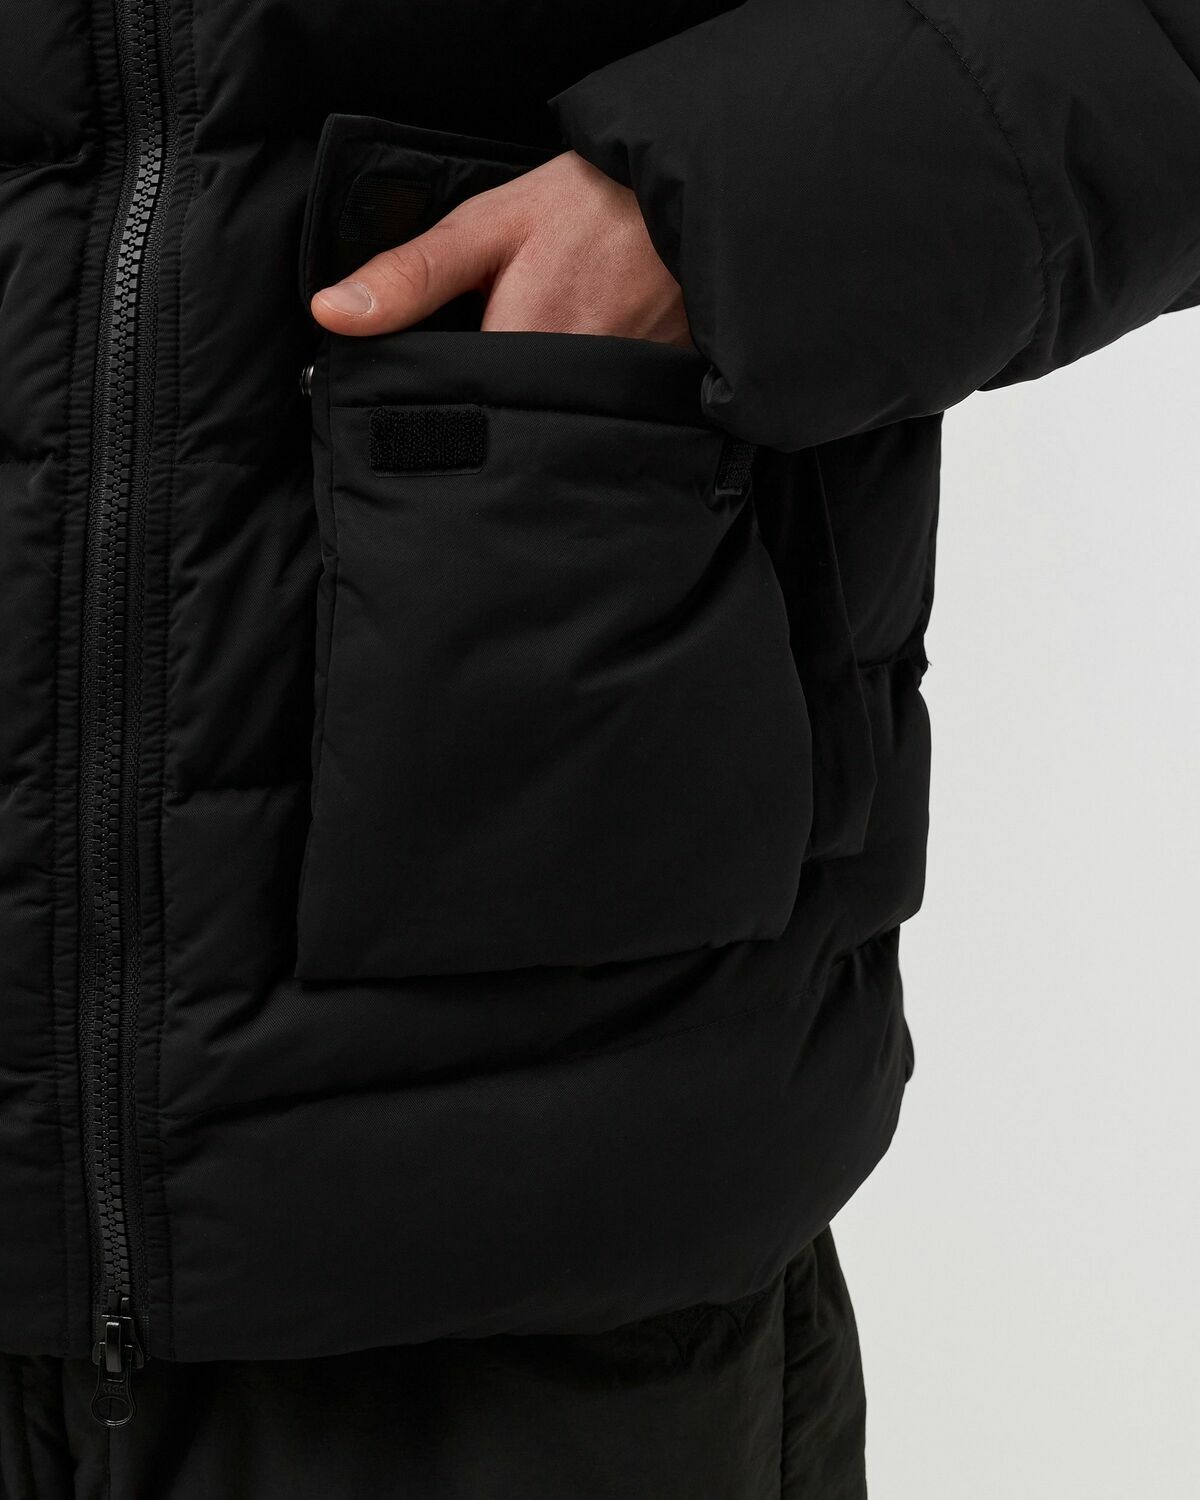 Bstn Brand Modular Puffer Jacket Black - Mens - Down & Puffer Jackets